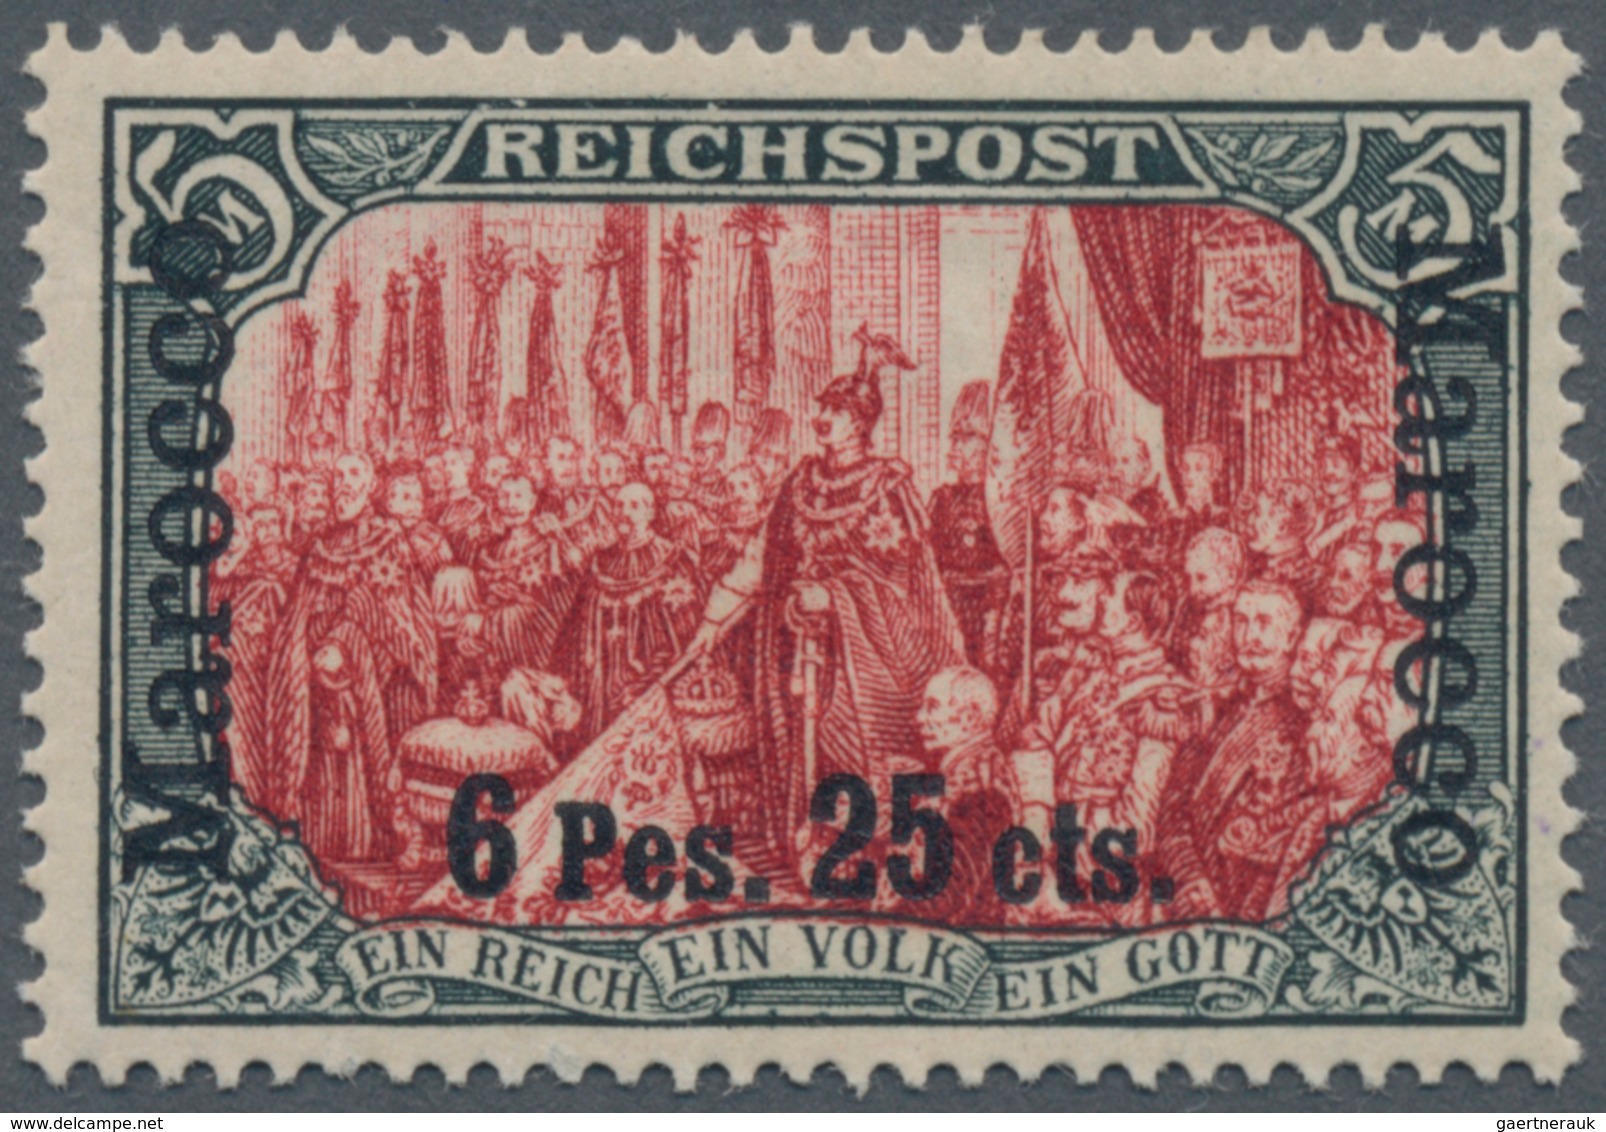 Deutsche Post In Marokko: 1900, 5 M. Reichspost, Type I Ohne Nachmalung, Ungebraucht, Minimale Falzh - Deutsche Post In Marokko